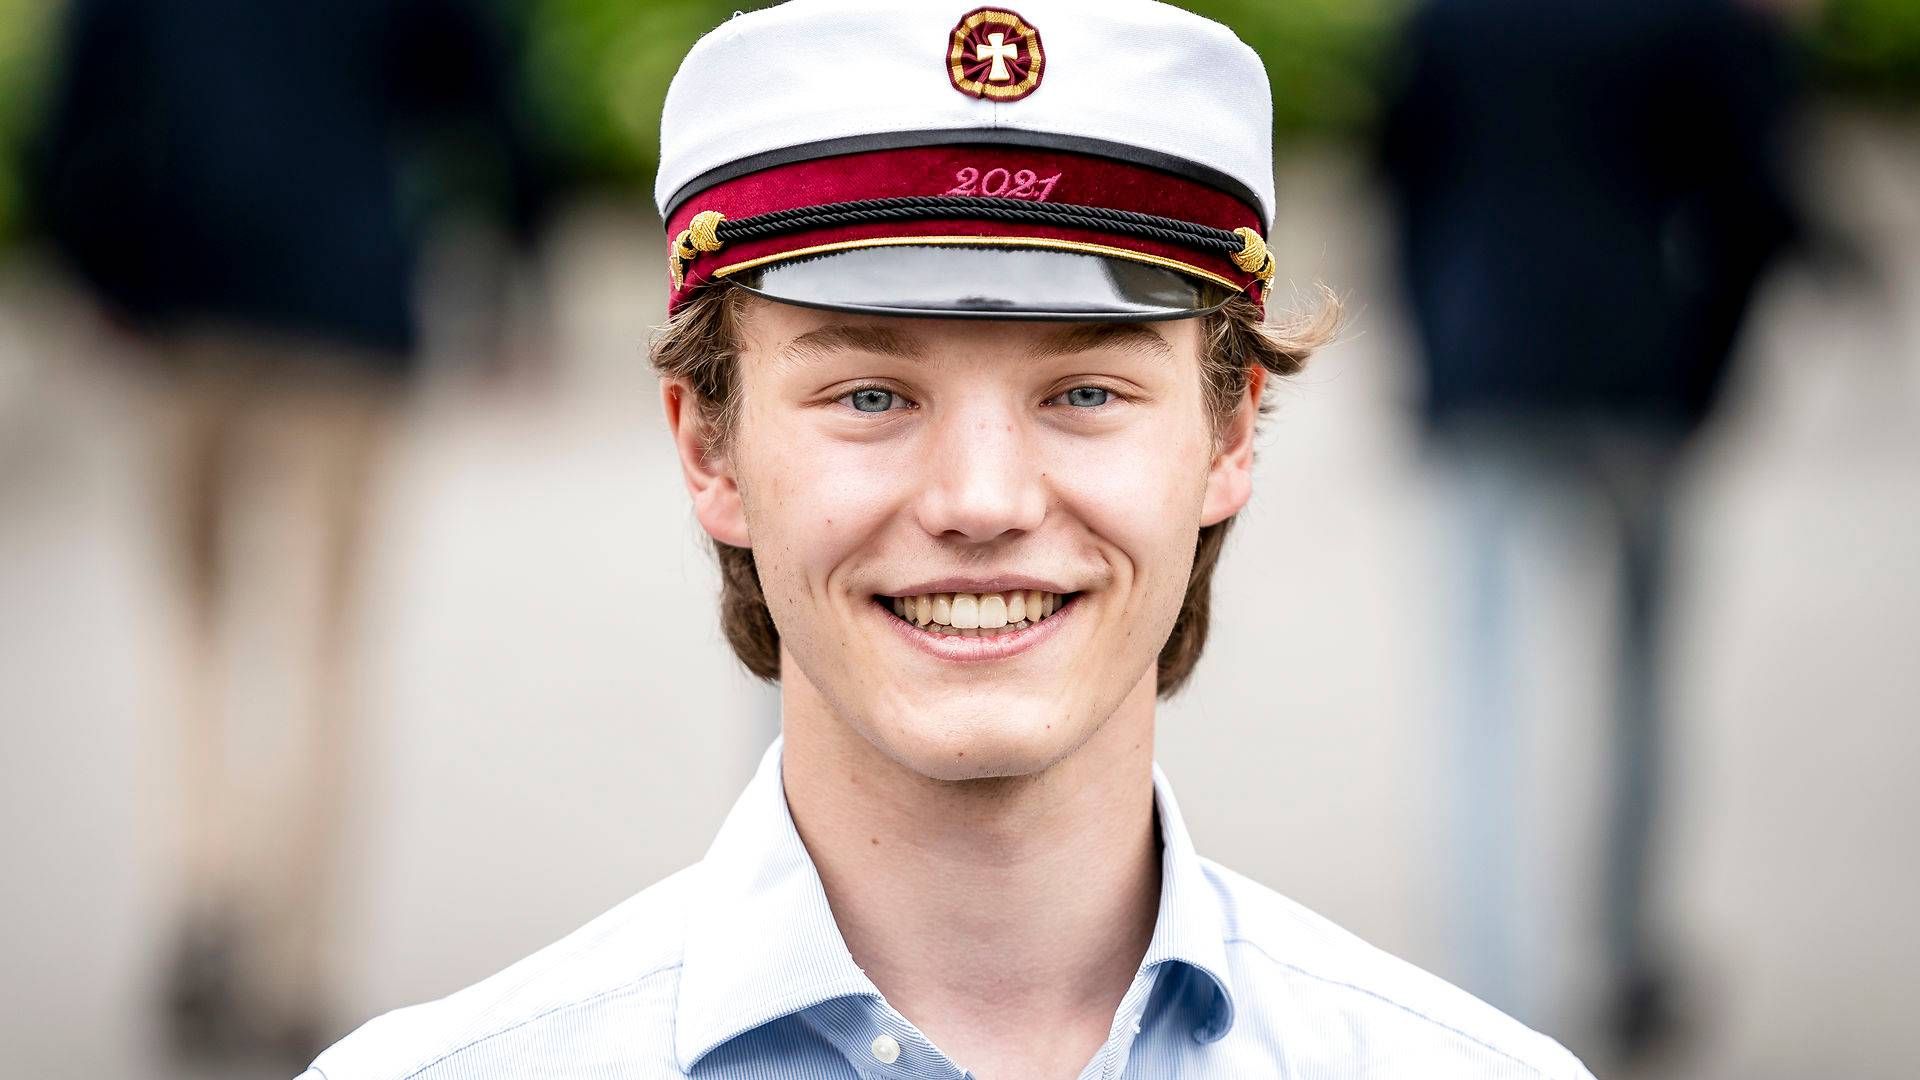 Prins Felix blev student sidste sommer og begynder nu på shippinguddannelsen på CBS. | Foto: Mads Claus Rasmussen/Ritzau Scanpix